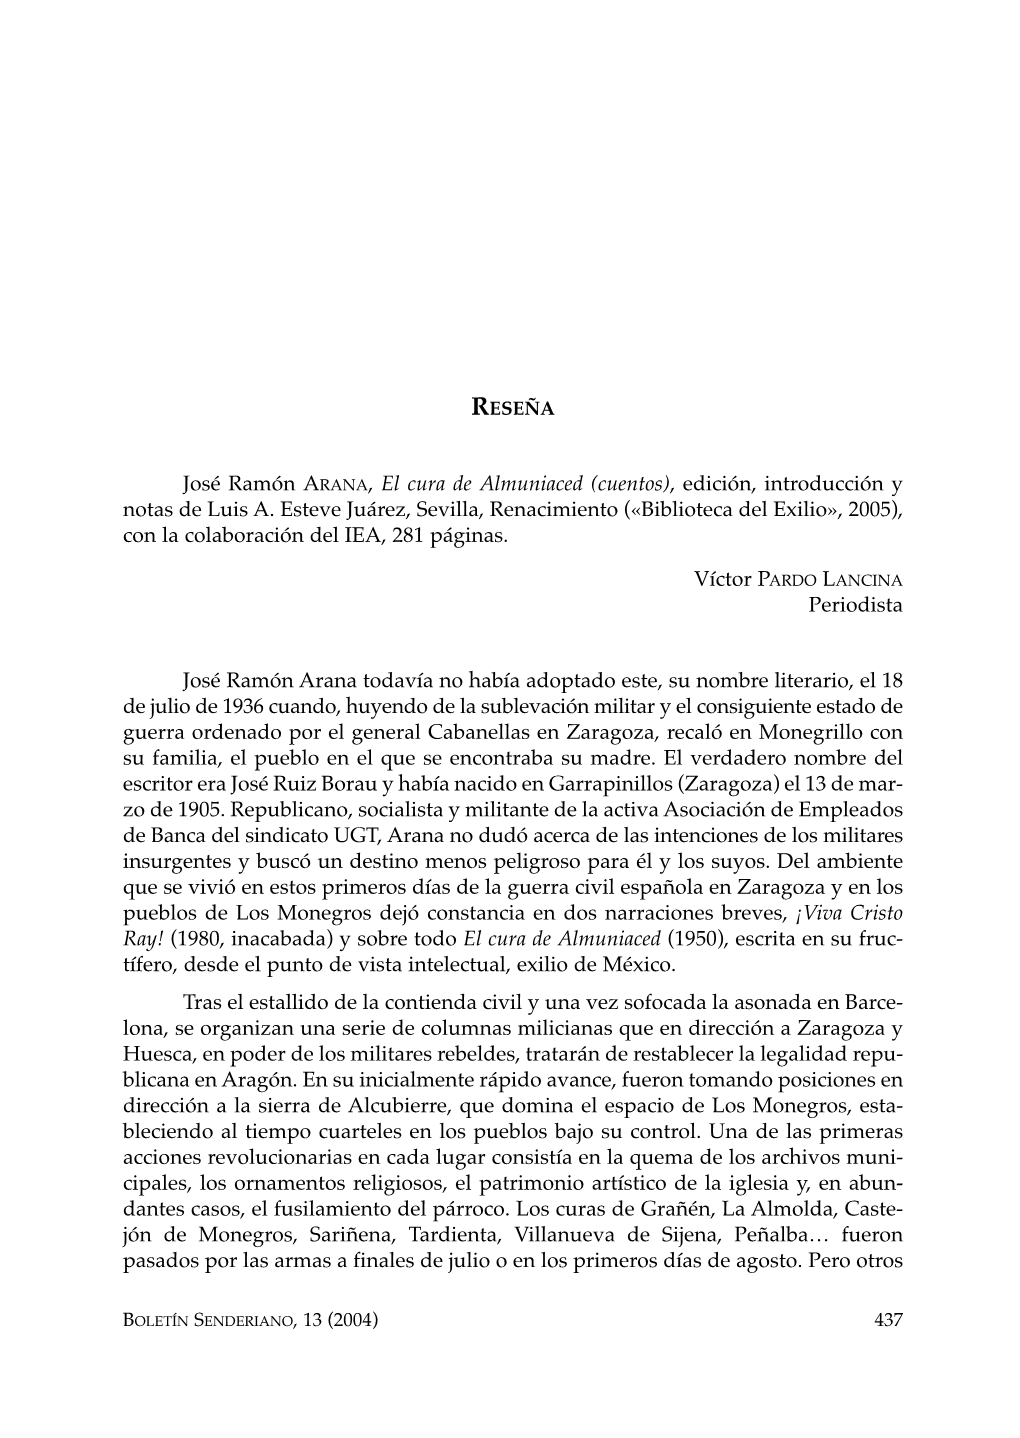 José Ramón ARANA, El Cura De Almuniaced (Cuentos), Edición, Introducción Y Notas De Luis A